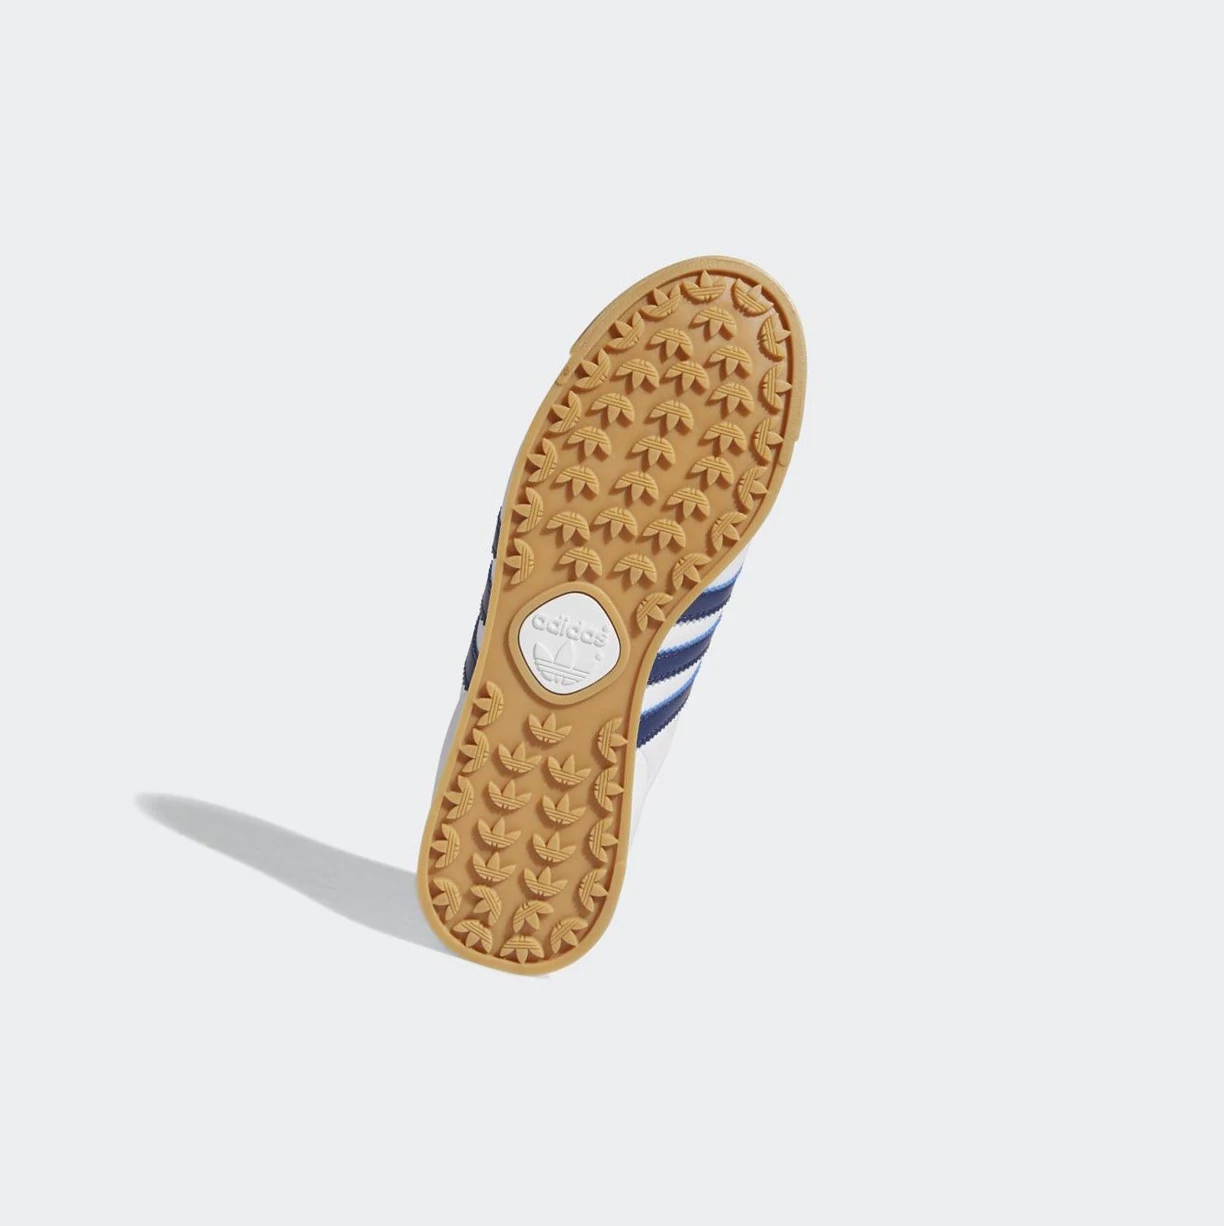 Originálne Topánky Adidas Samoa Detske Biele | 065SKLEUGMX